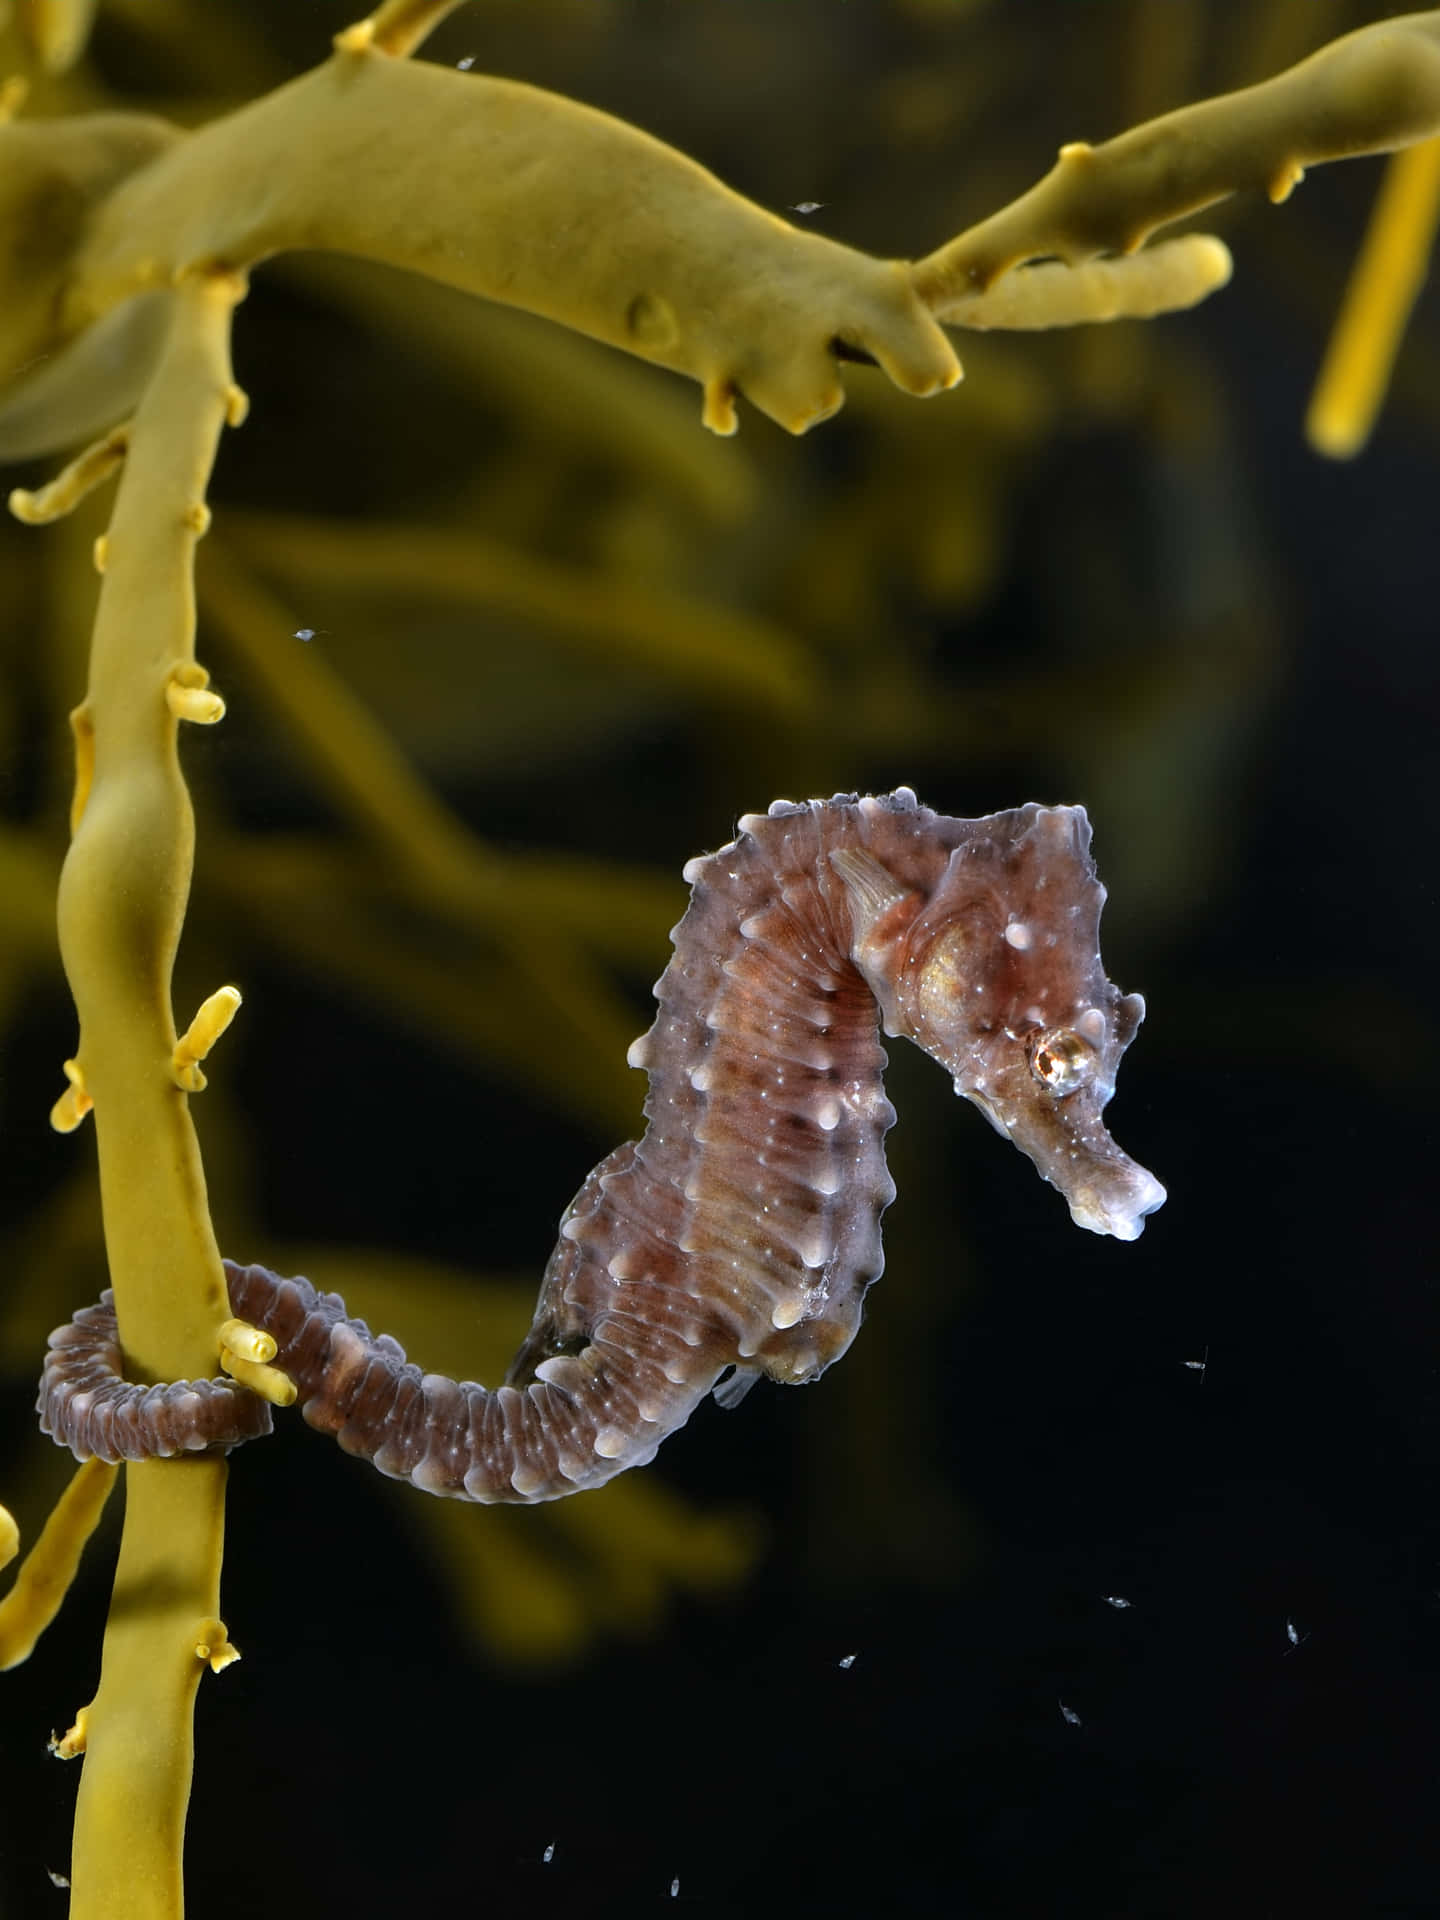 Seahorse cruising underwater.